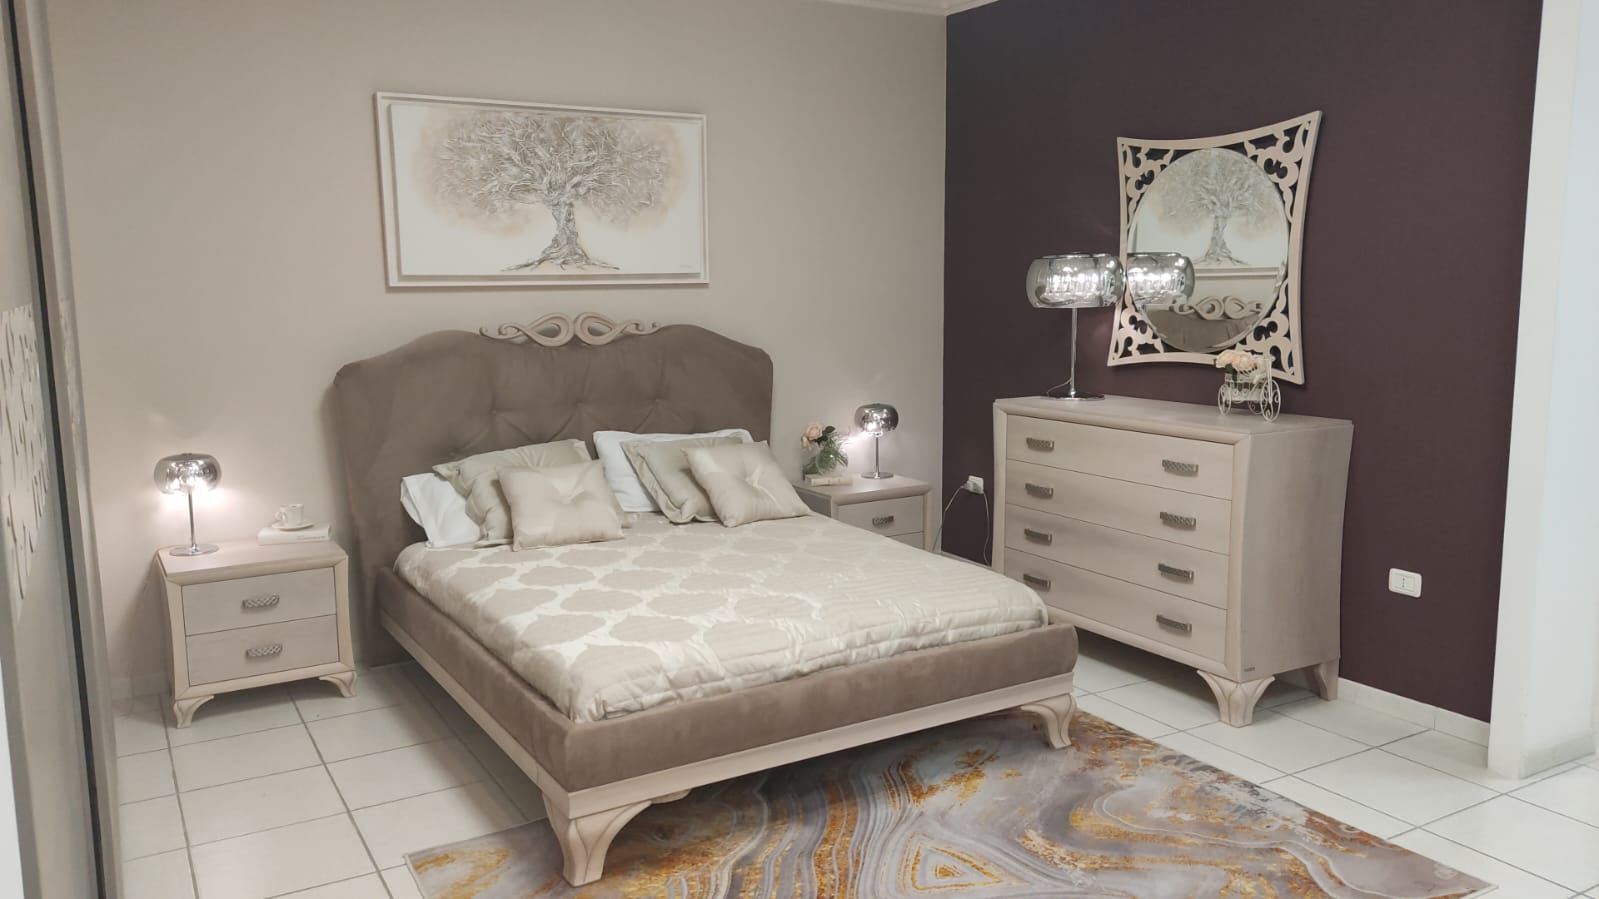 Camera da letto anch'essa tutta completamente in legno massello , modello Portofino, ditta mododieci